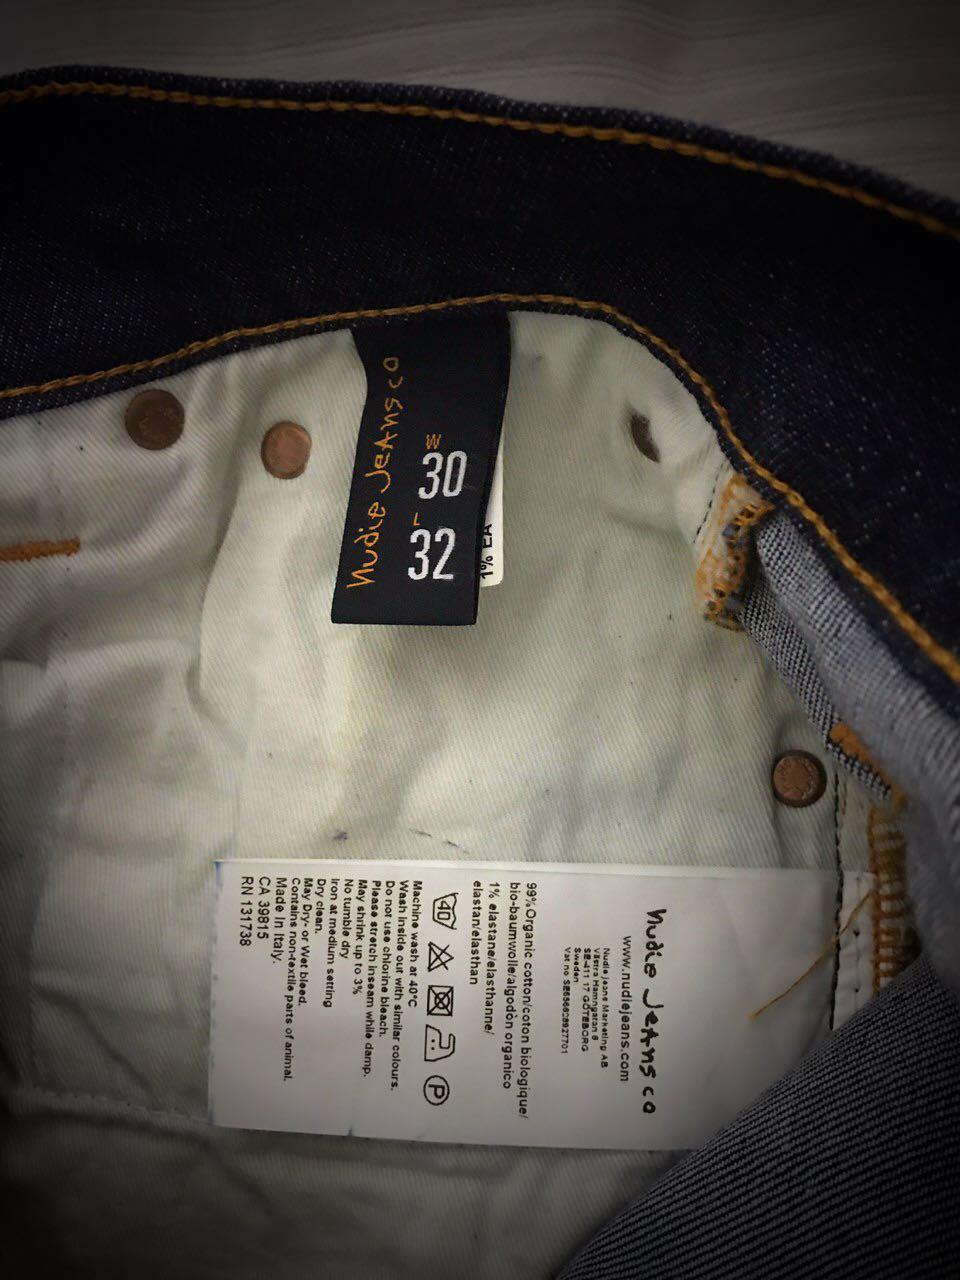 nudie jeans ca 39815